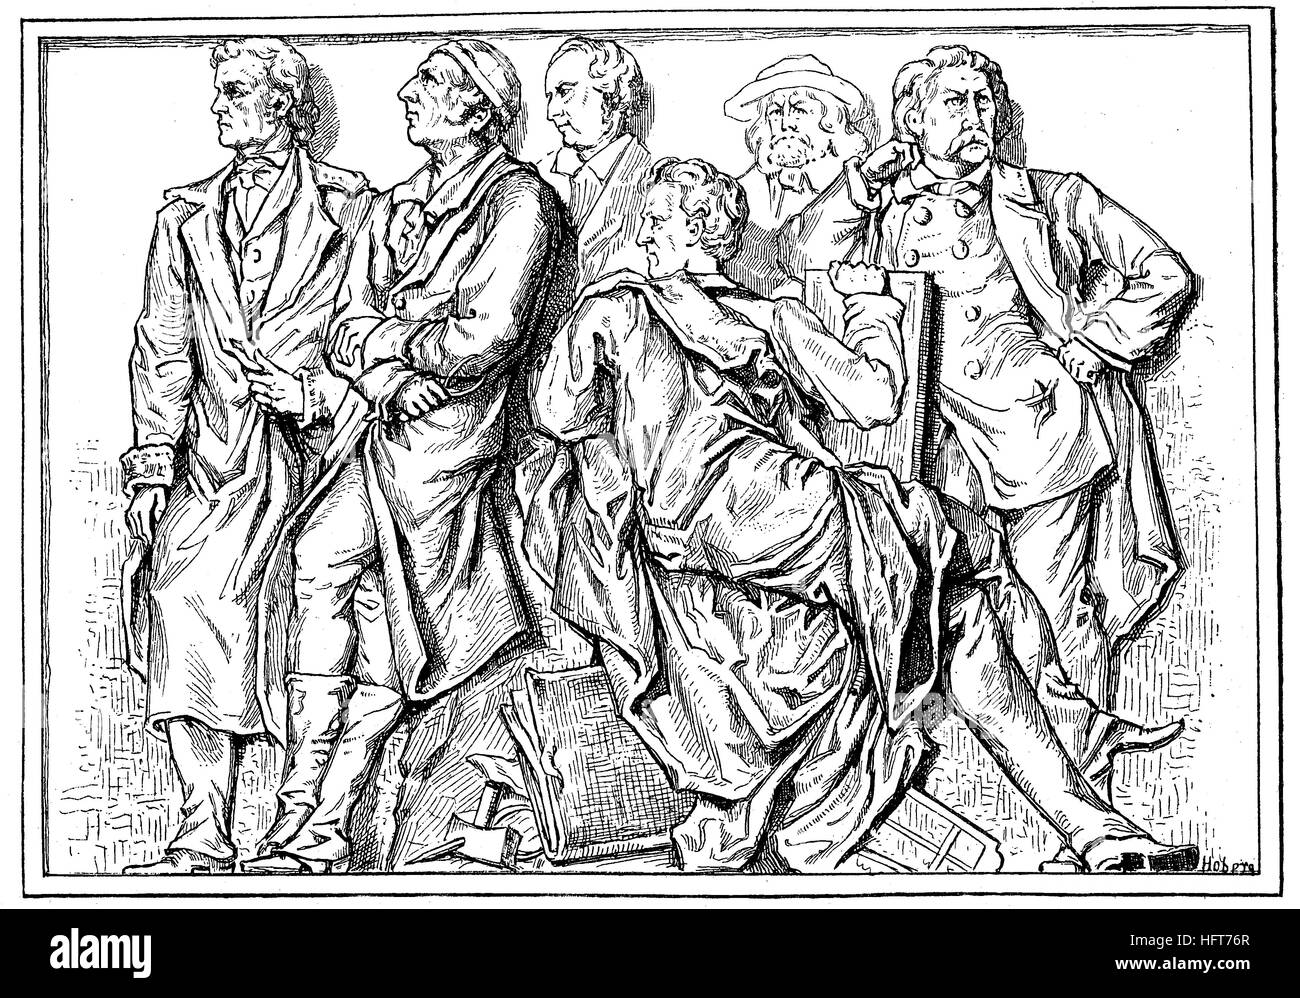 Da sinistra, Rietschel, G. Schadow, W. Schadow, Schnorr von Carolsfeld, Rethel und Schwind, sono le persone da Relieffries di Geyer nella Galleria Nazionale di Berlino, Germania, xilografia a partire dall'anno 1885, digitale migliorata Foto Stock